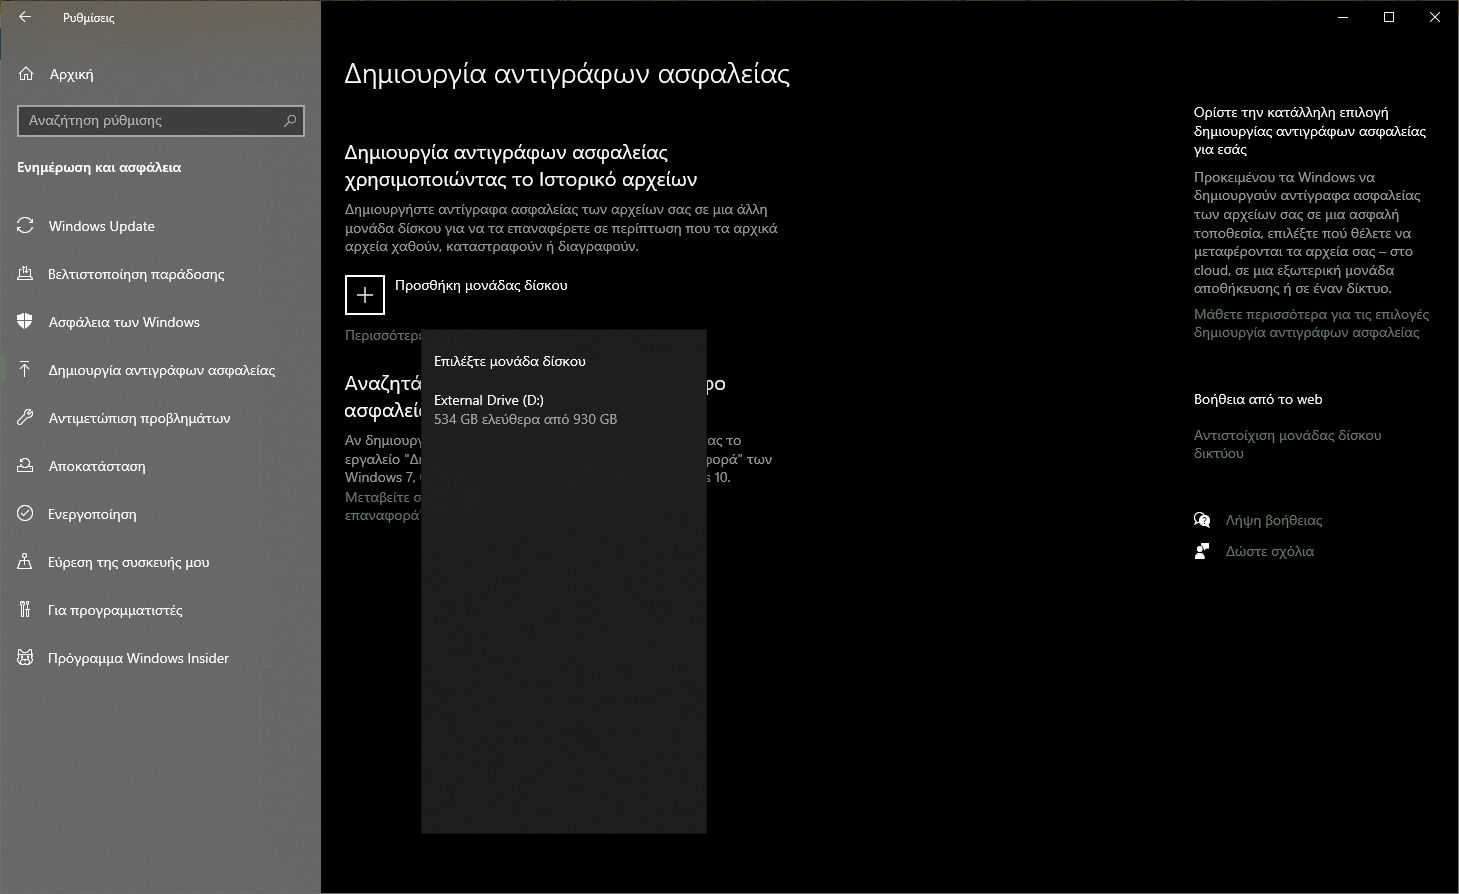 Αντίγραφα ασφαλείας (Backup) στα Windows 10